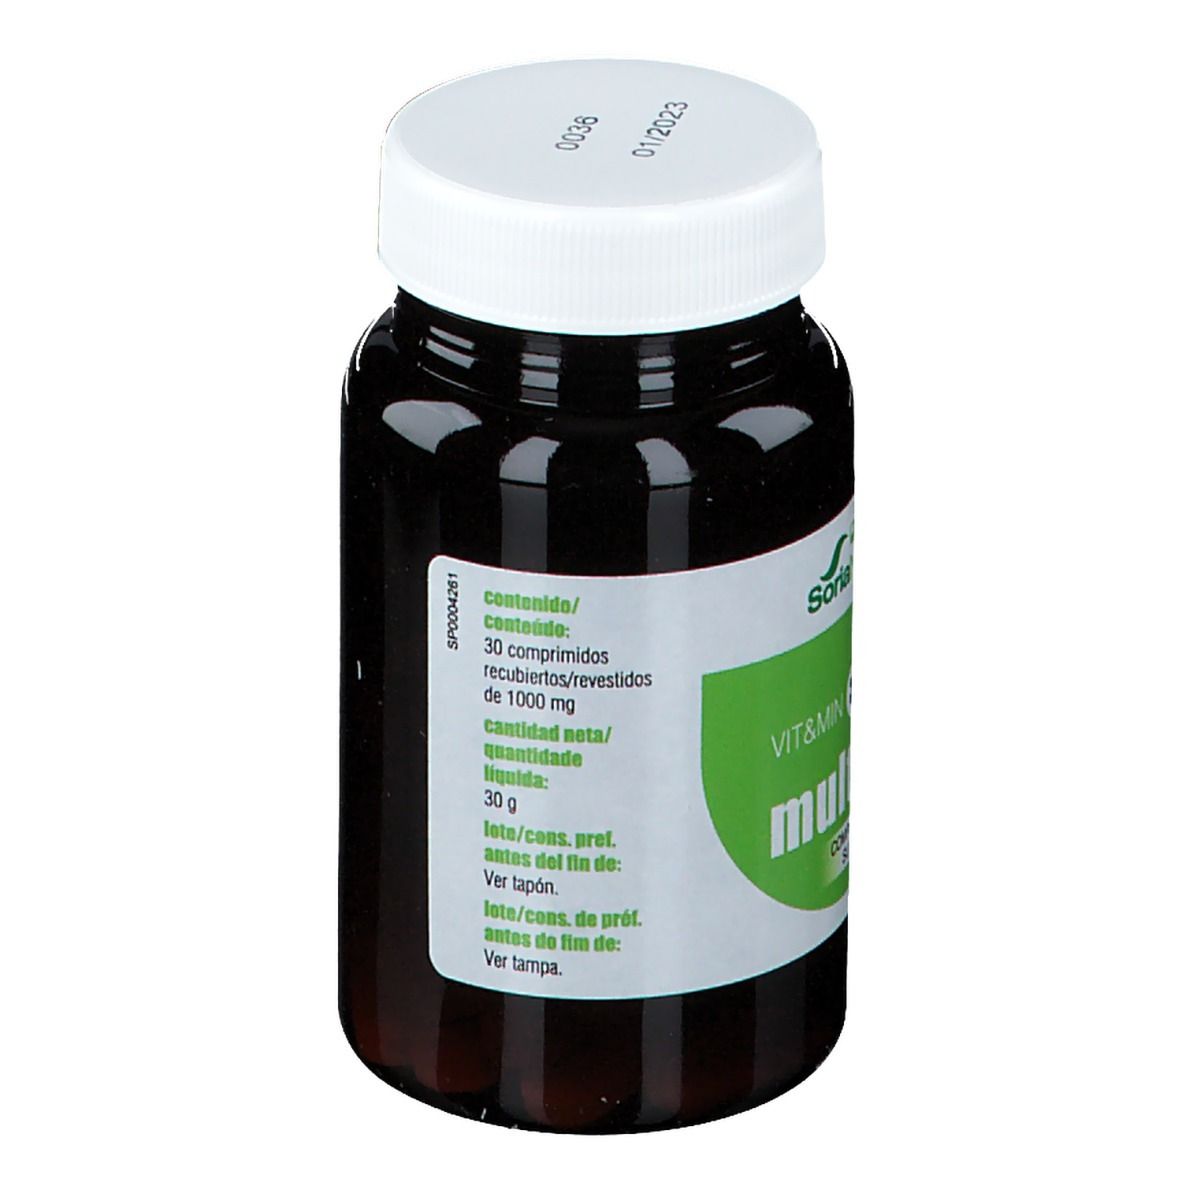 SoriaNatural® VIT&MIN 34 Multifeed